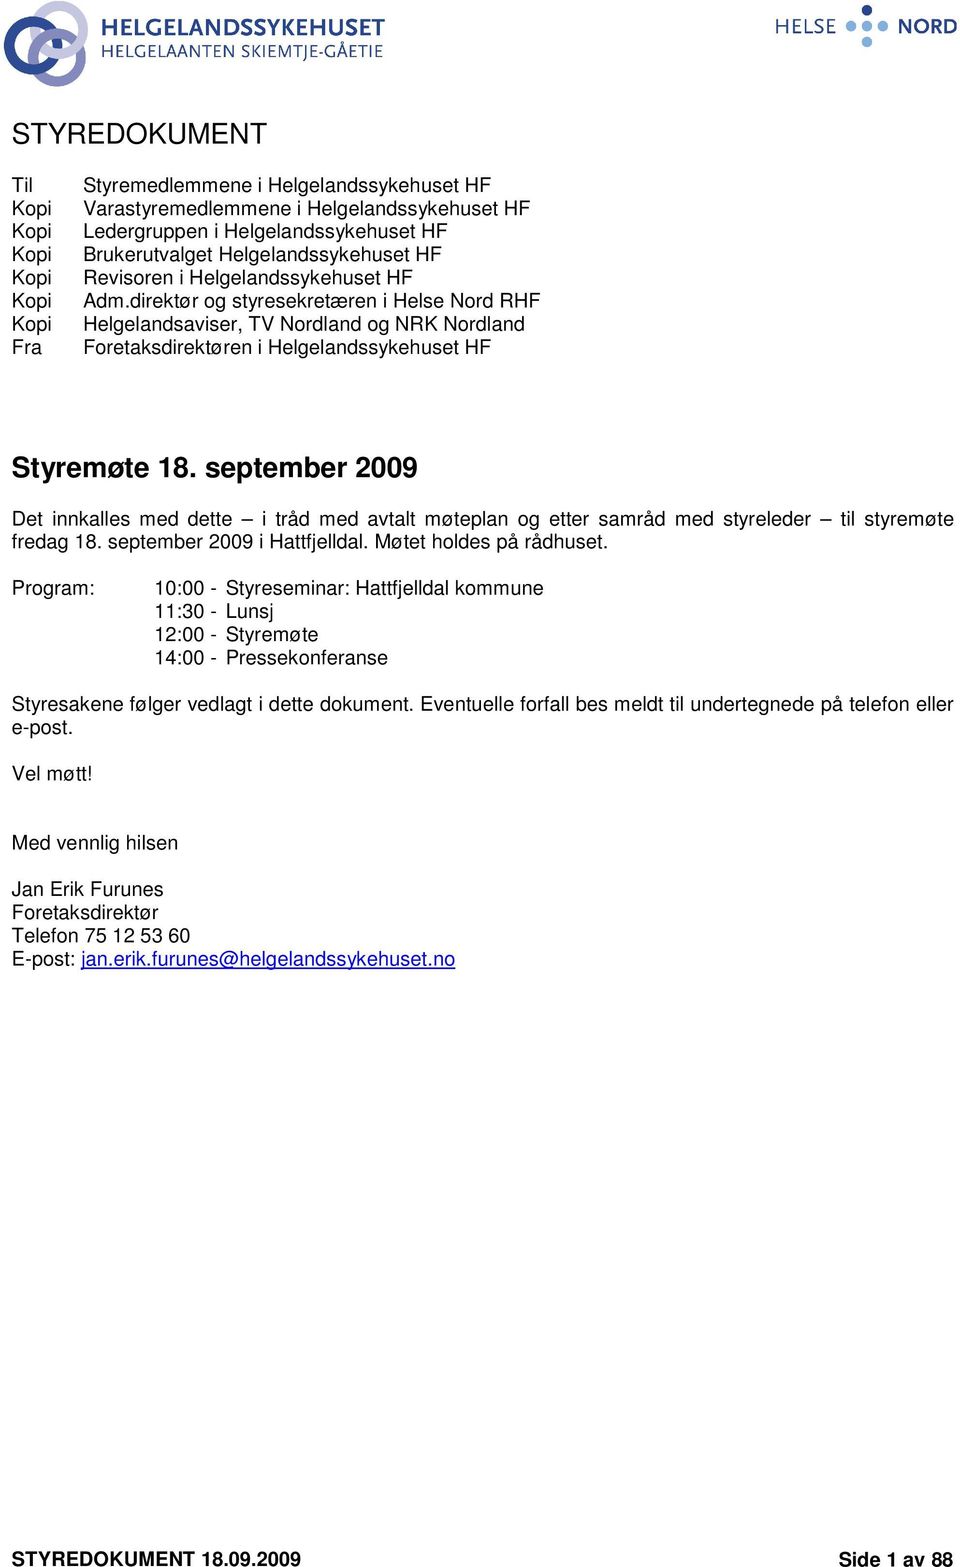 september 29 Det innkalles med dette i tråd med avtalt møteplan og etter samråd med styreleder til styremøte fredag 18. september 29 i Hattfjelldal. Møtet holdes på rådhuset.